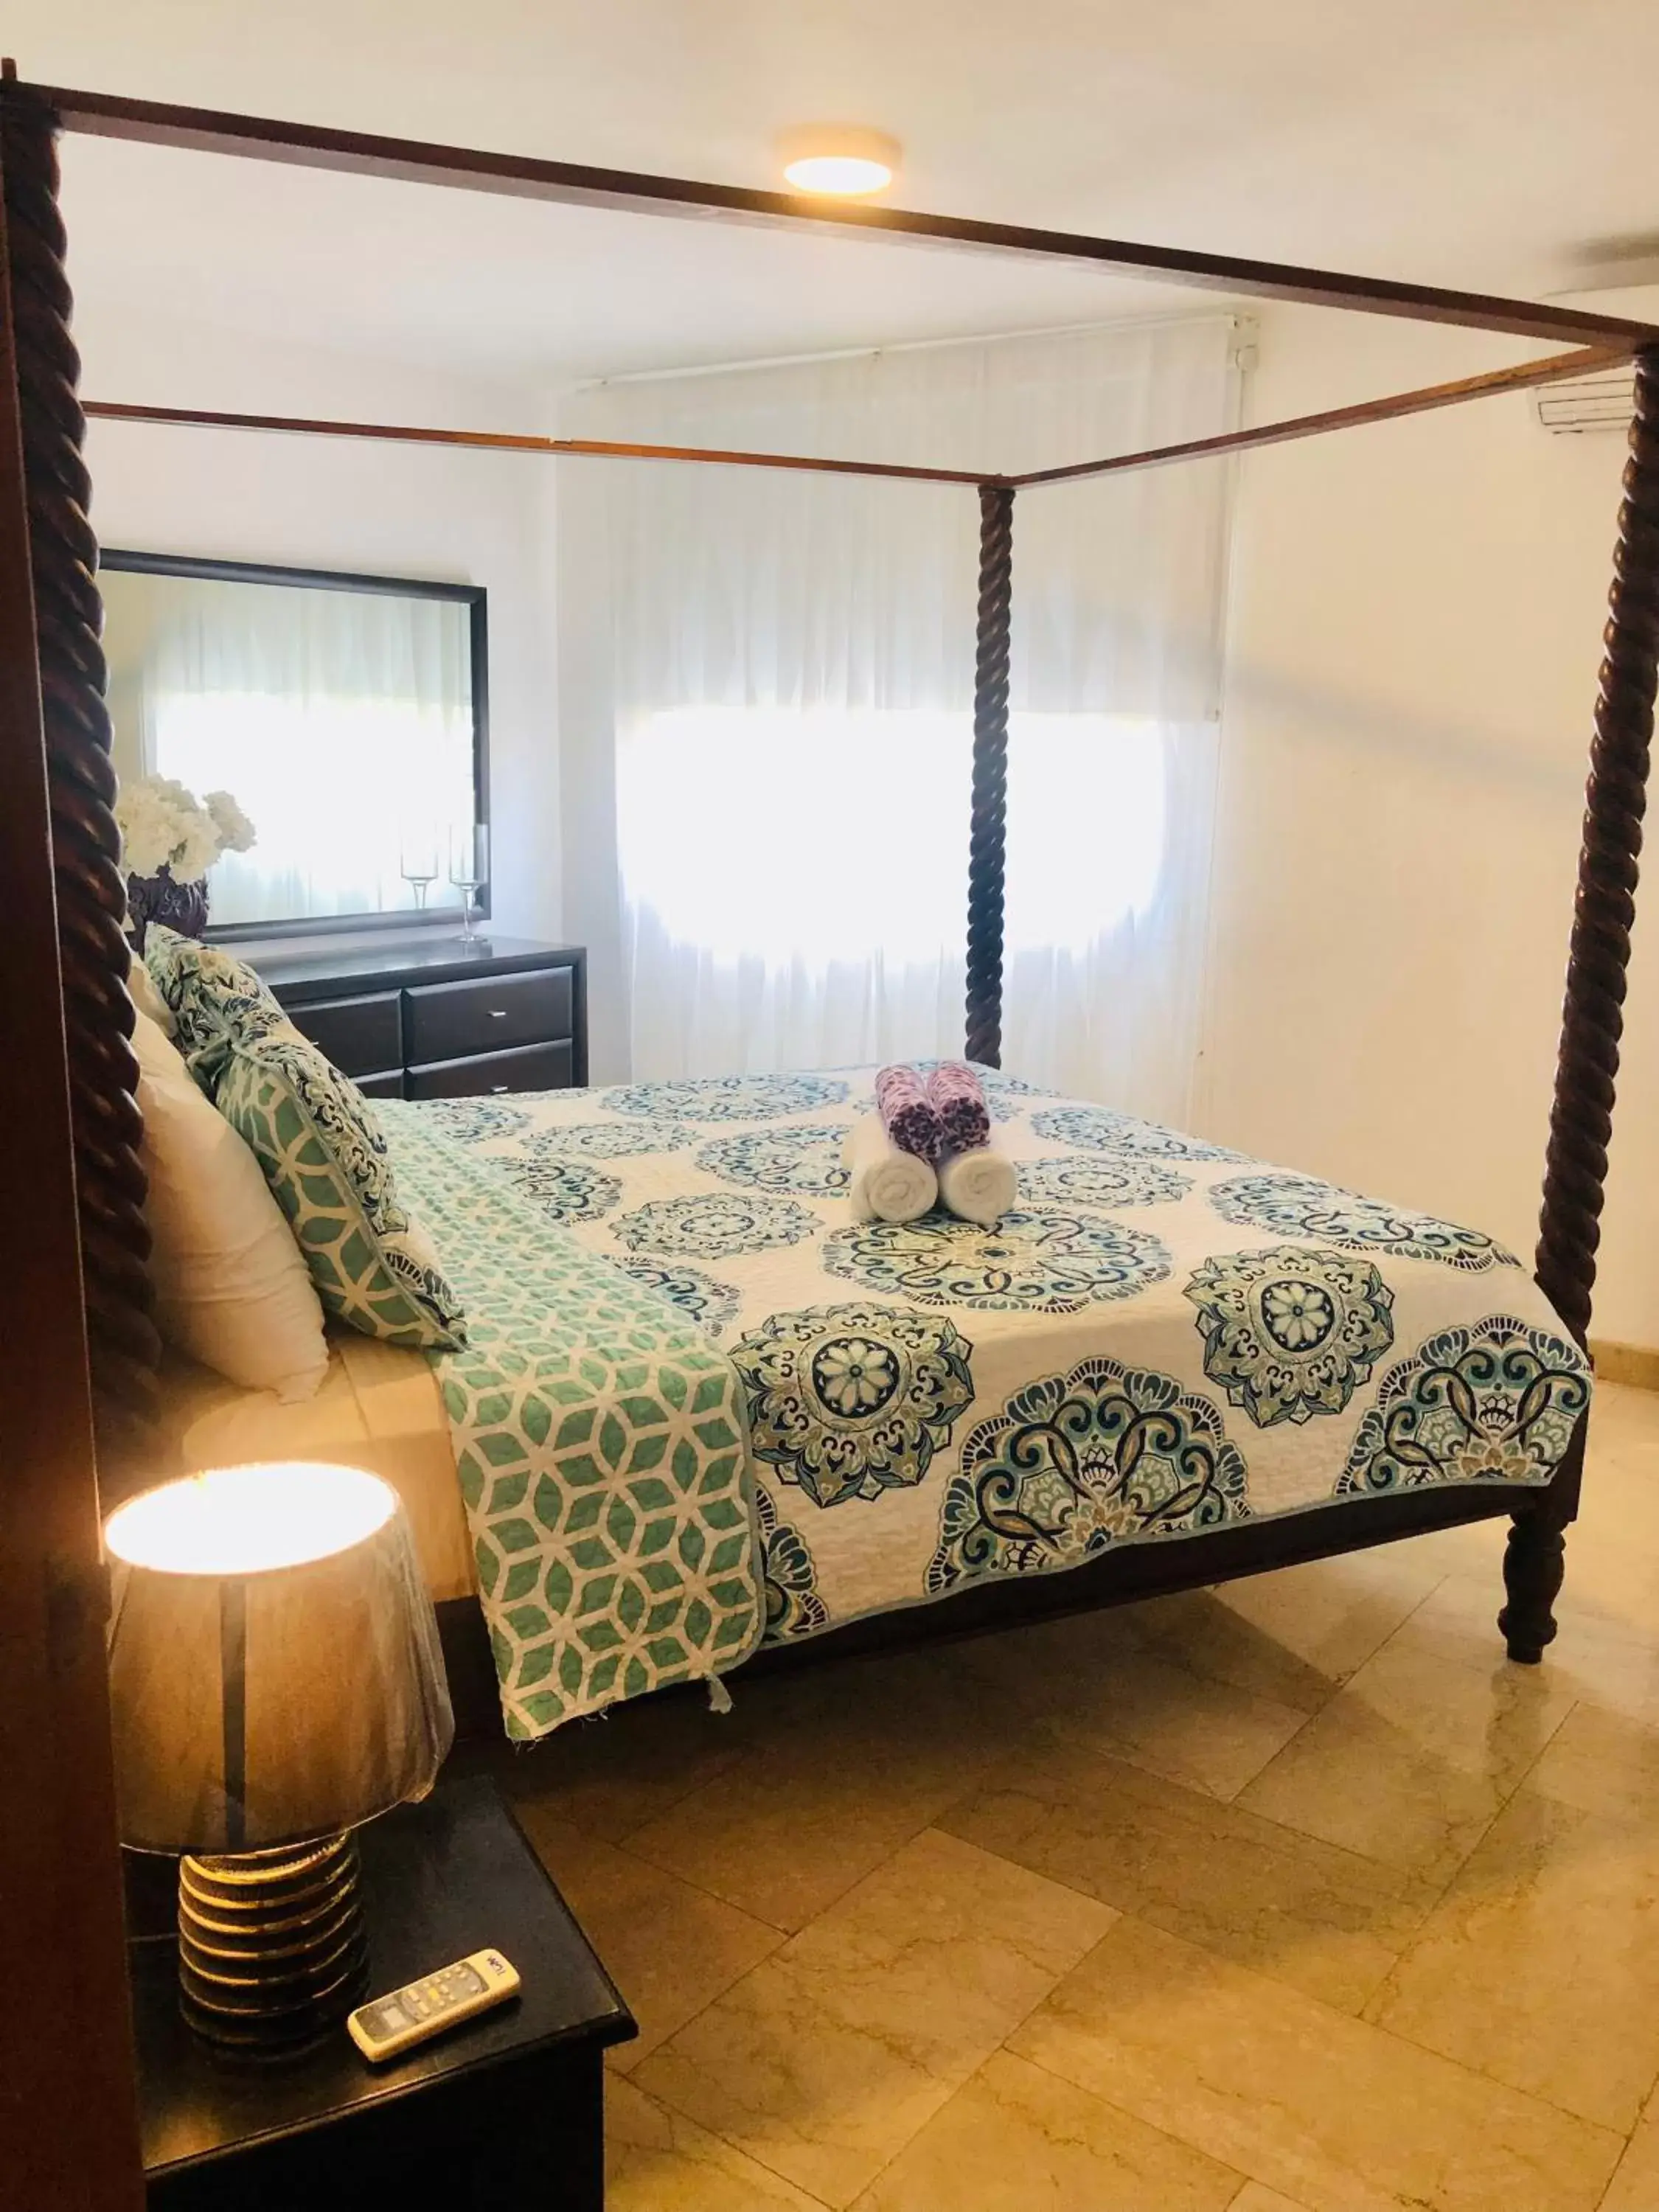 Bed in Los Corales Luxury Villas Beach Club and Spa